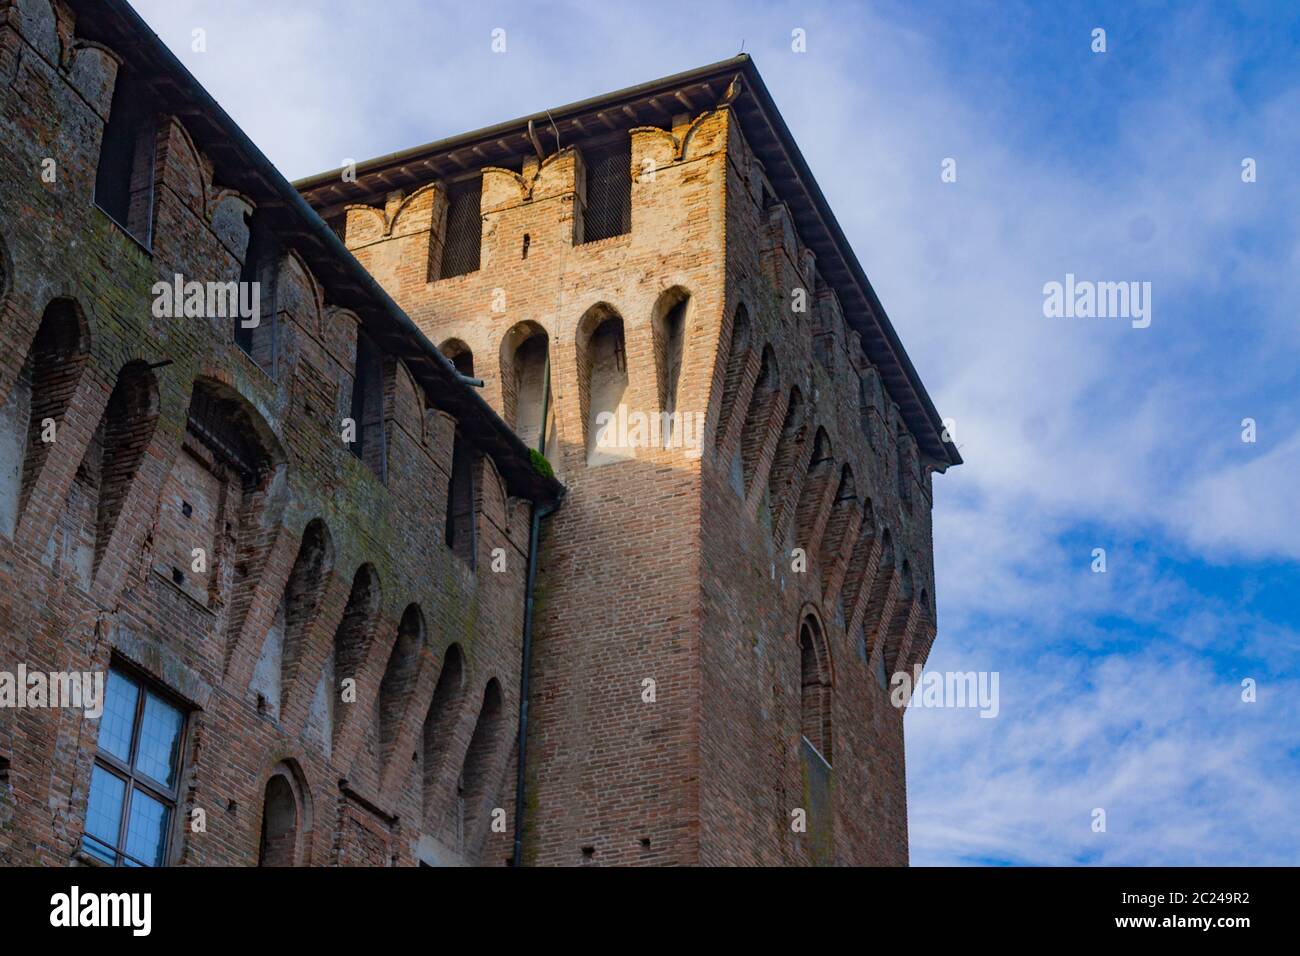 Forteresse médiévale, château de Gonzaga Saint George à Mantua, Italie Banque D'Images